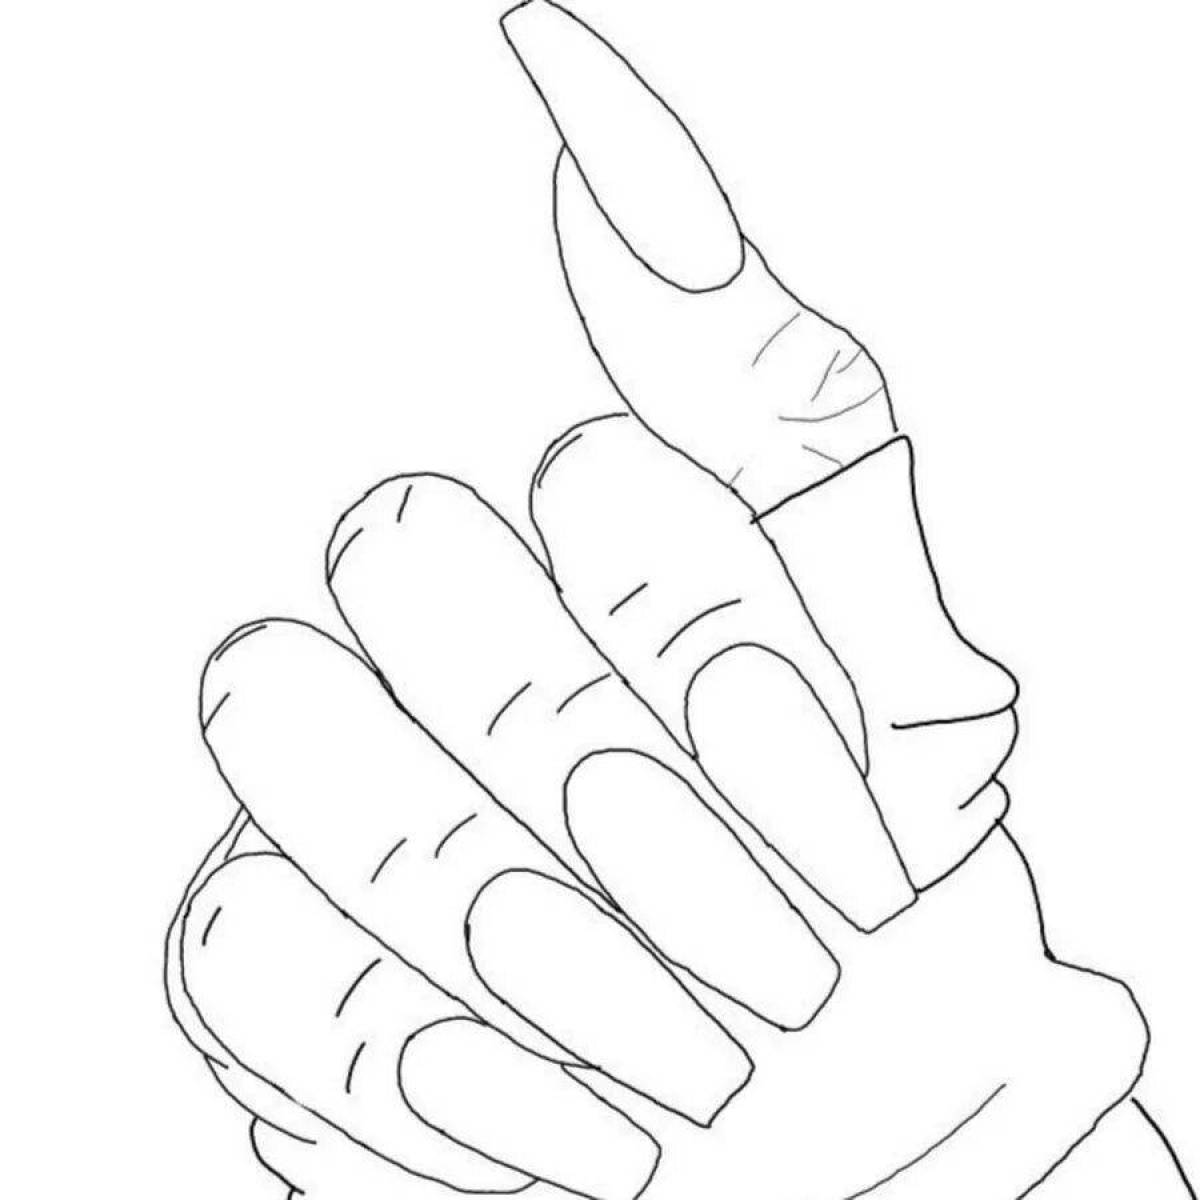 Яркая картинка для раскрашивания ногтей